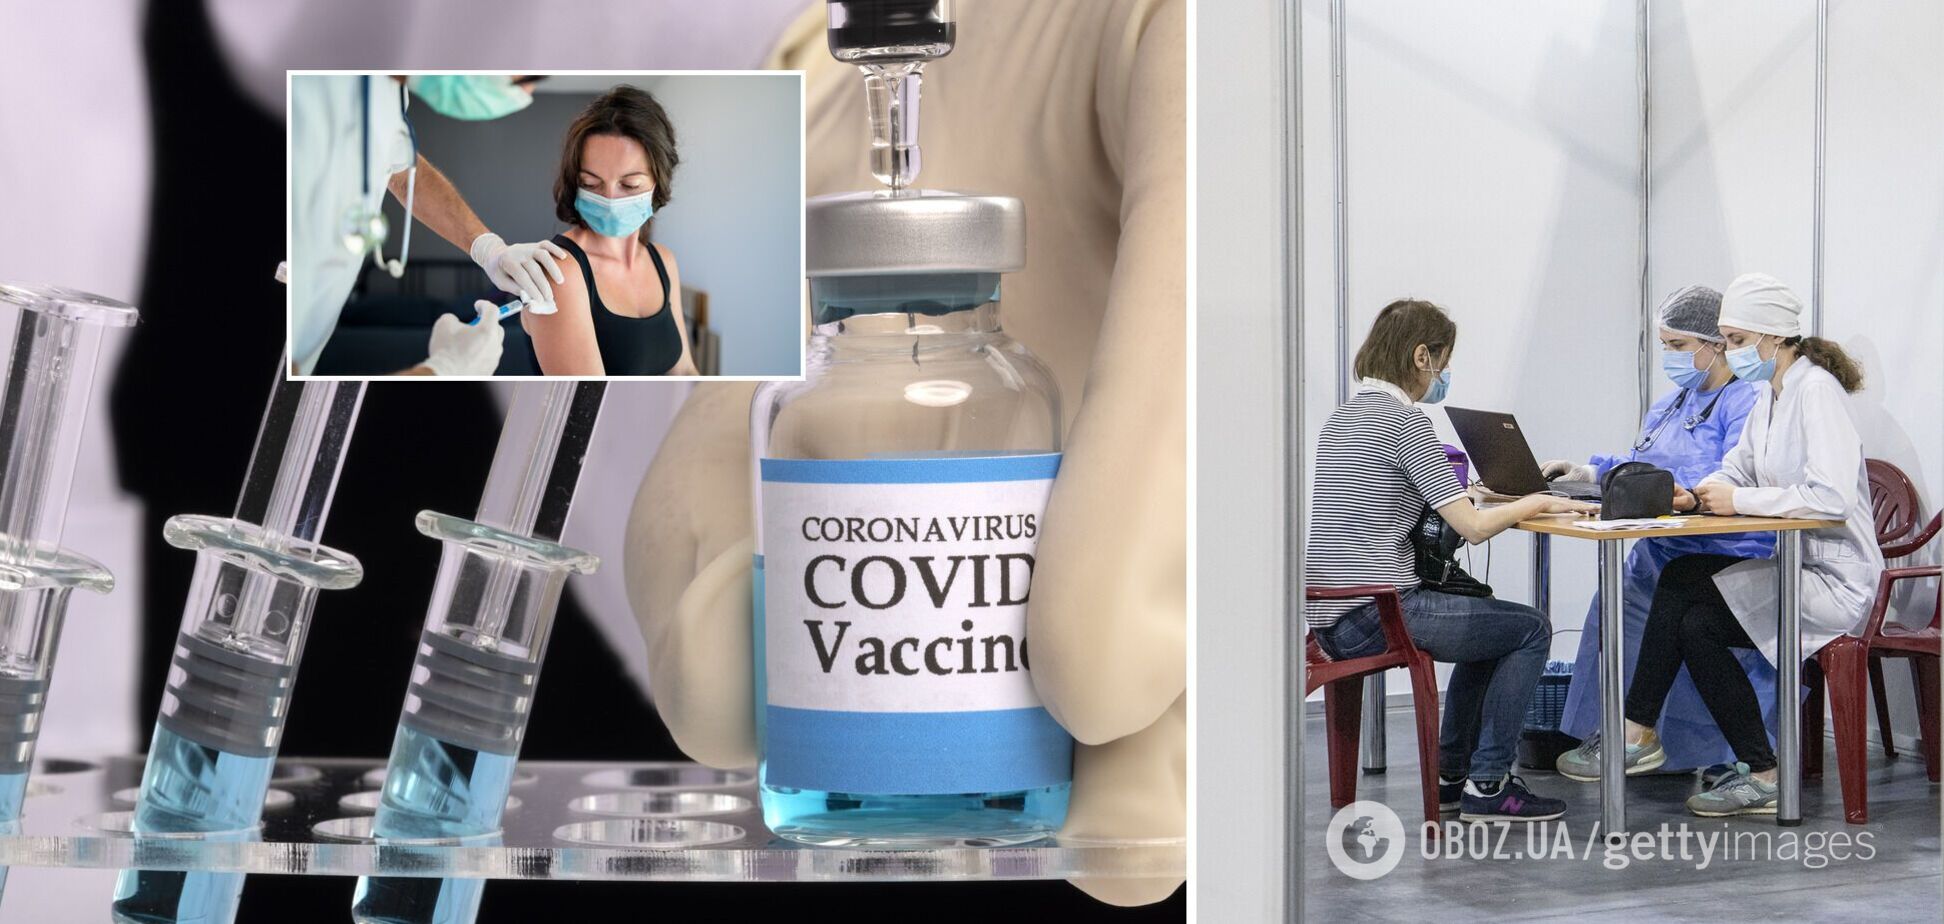 Где сделать прививку против коронавируса в Украине